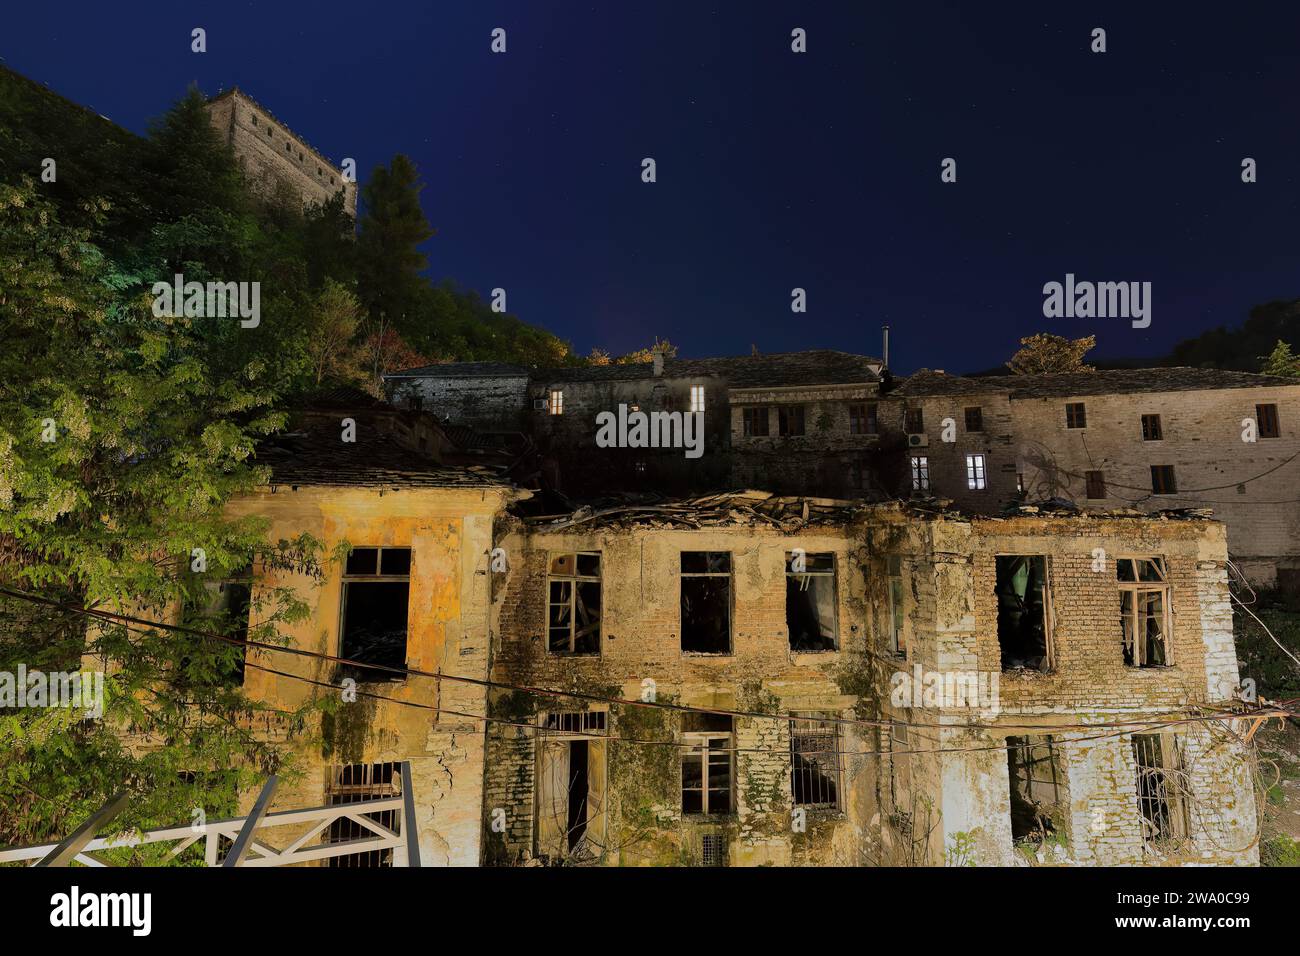 190 scena notturna di vecchie case in rovina ai piedi della collina della fortezza e retro di vecchie case a Rruga Gjin Bue Shpata. Gjirokaster-Albania. Foto Stock